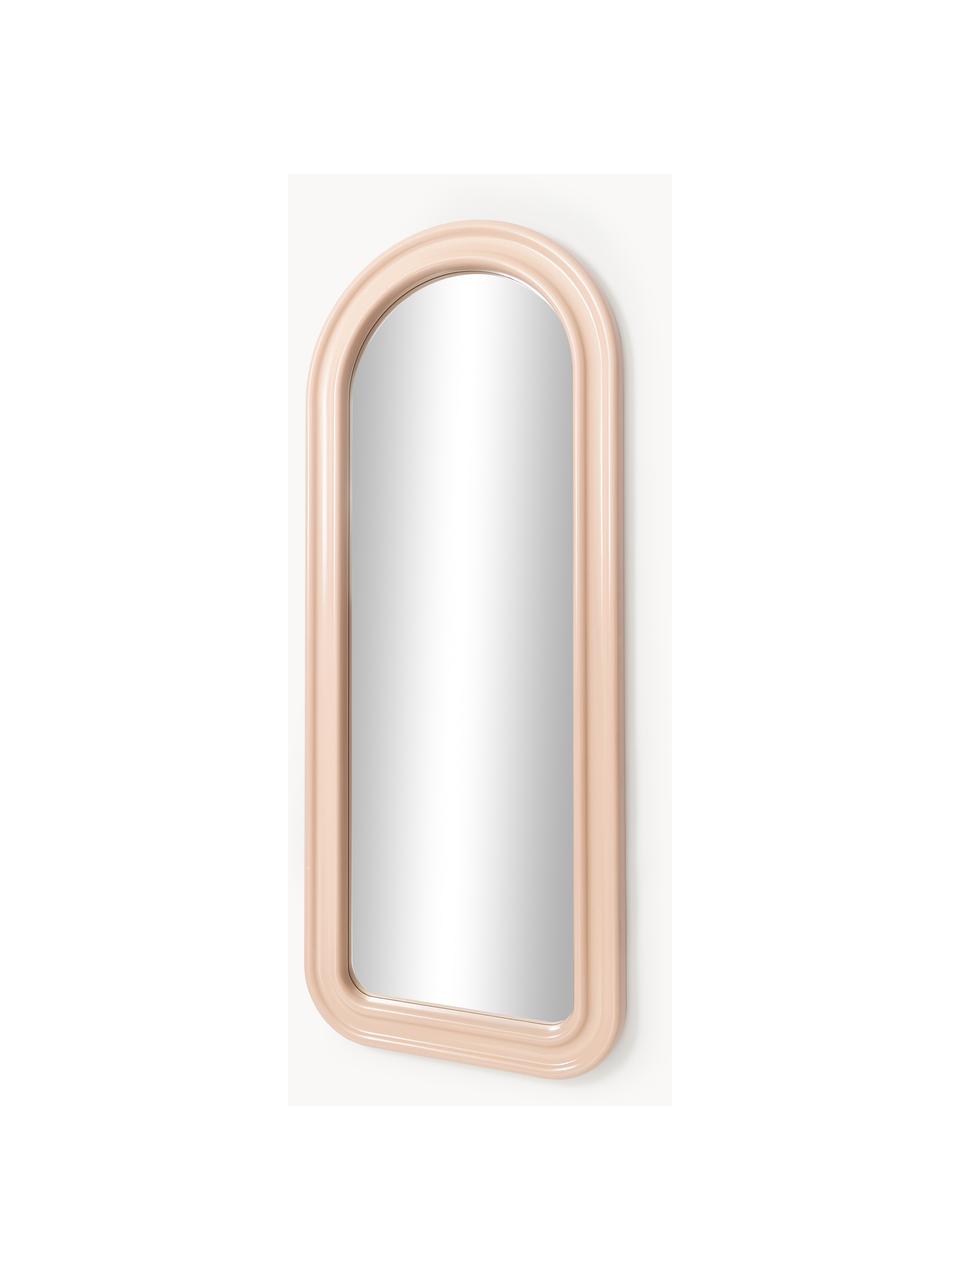 Ganzkörperspiegel Selim, Spiegelfläche: Spiegelglas, Peach, B 70 x H 175 cm